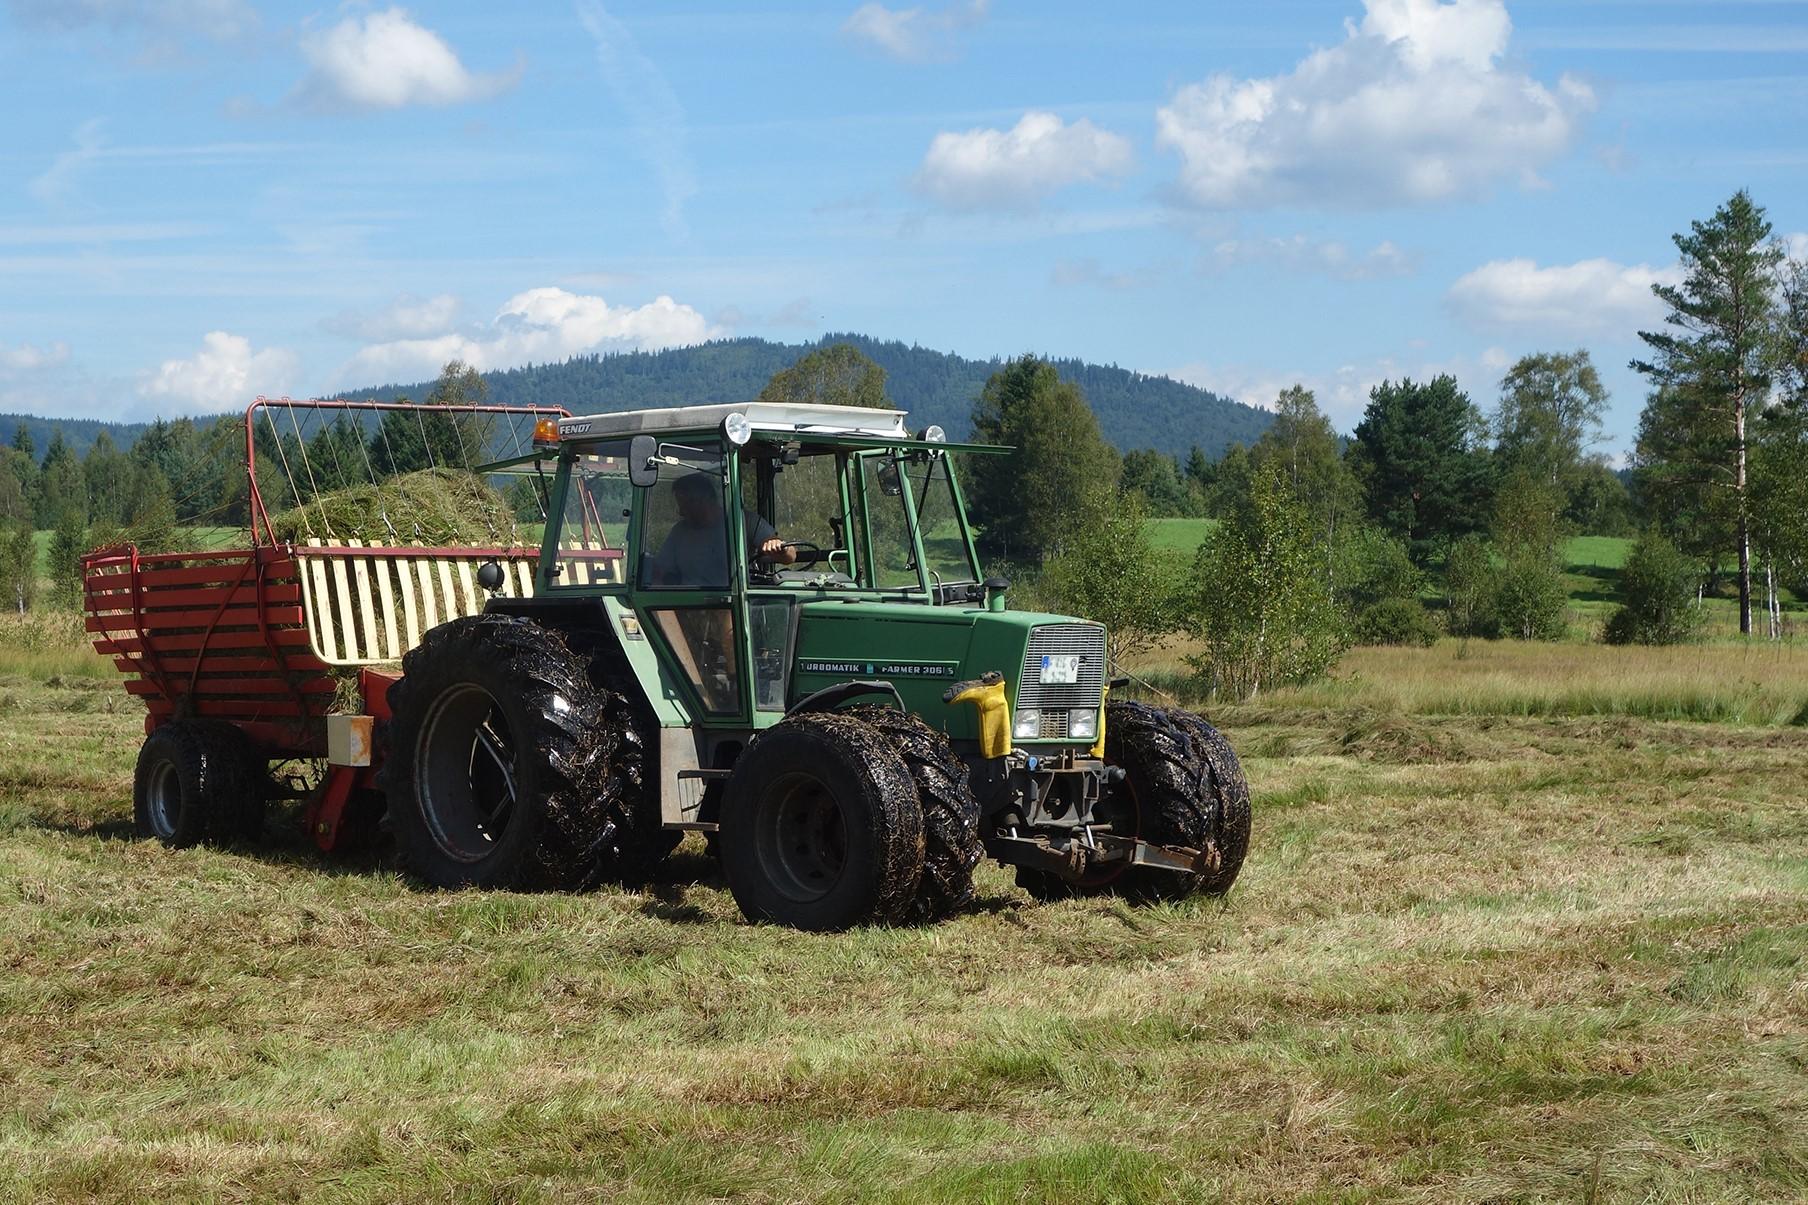  Ein Landwirt pflegt eine feuchte Biotopfläche bei Bischofsreuth mit Spezialbereifung am Traktor.